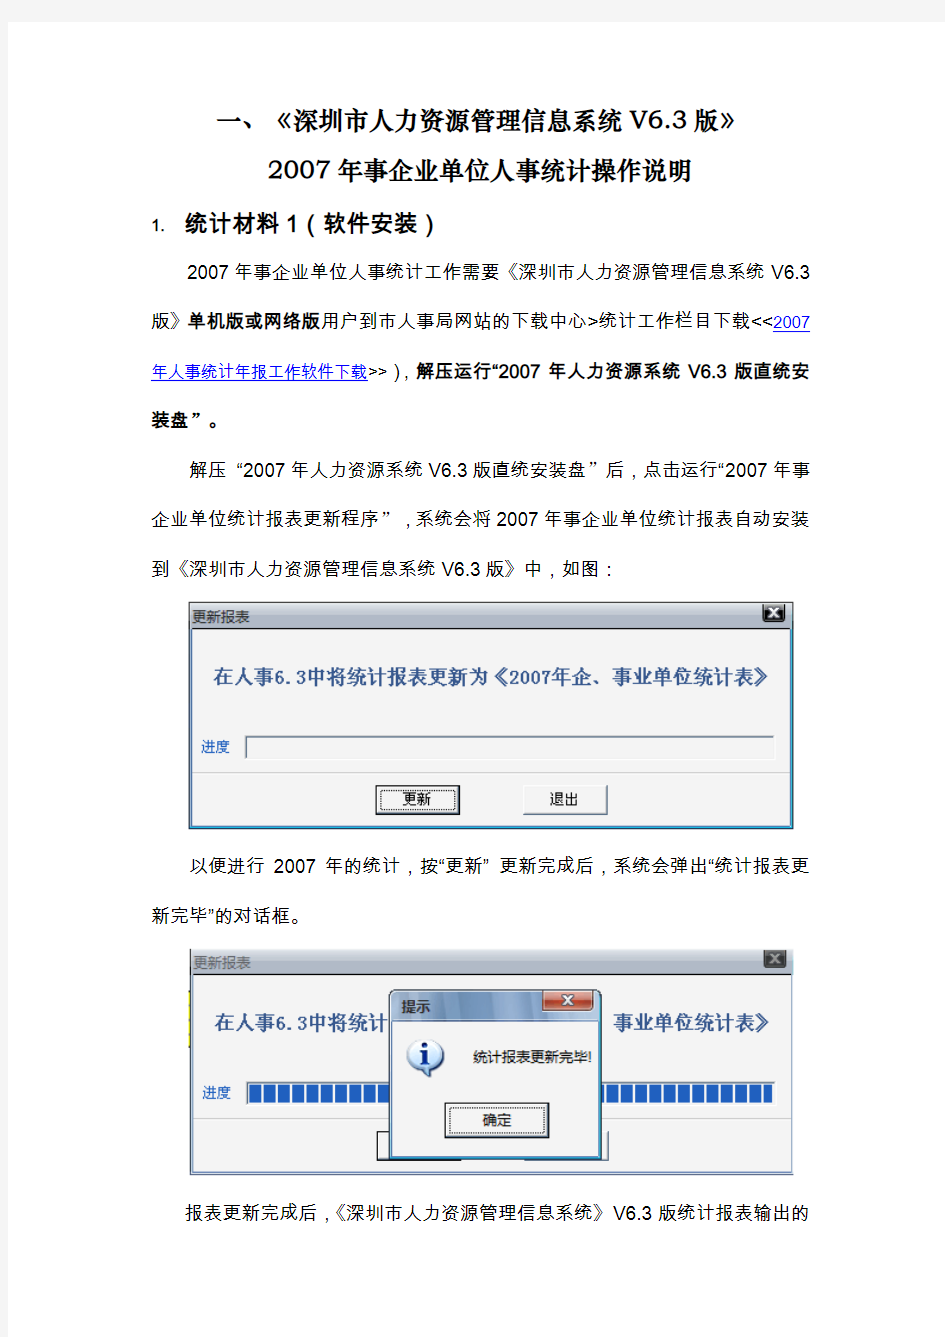 深圳人力资源管理信息系统V3版